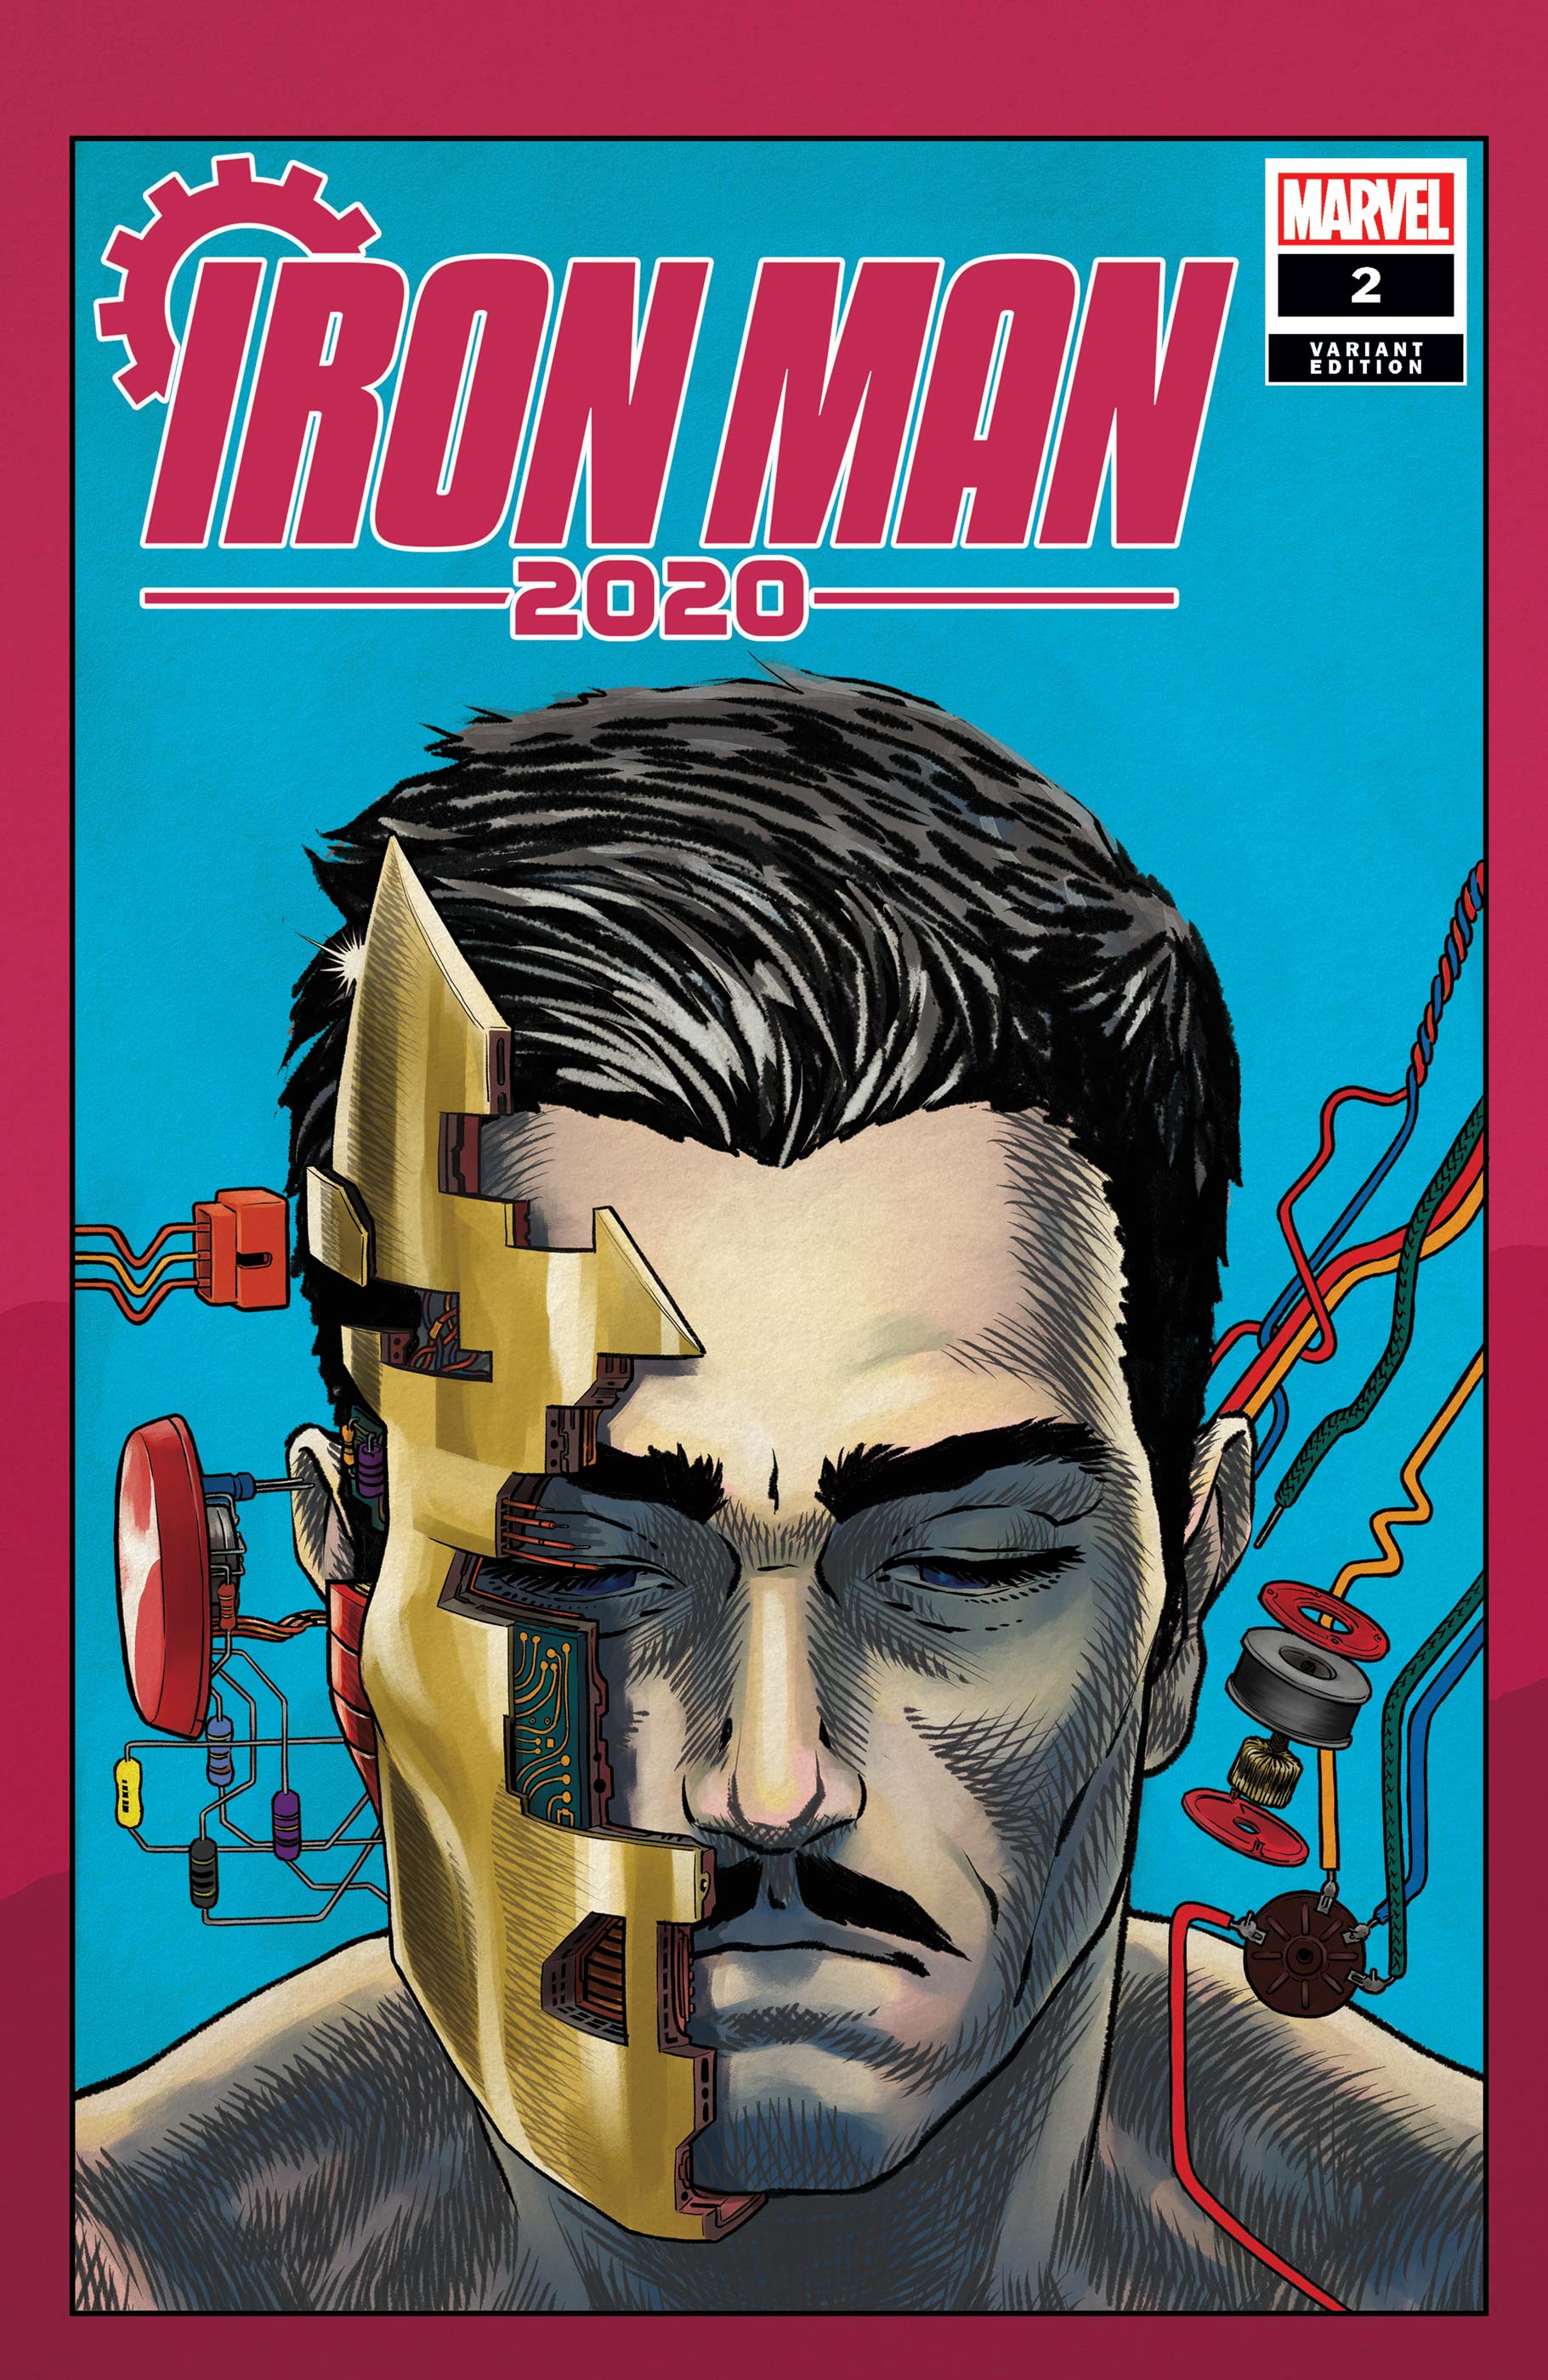 Iron Man 2020 (2020) #2 (Variant)